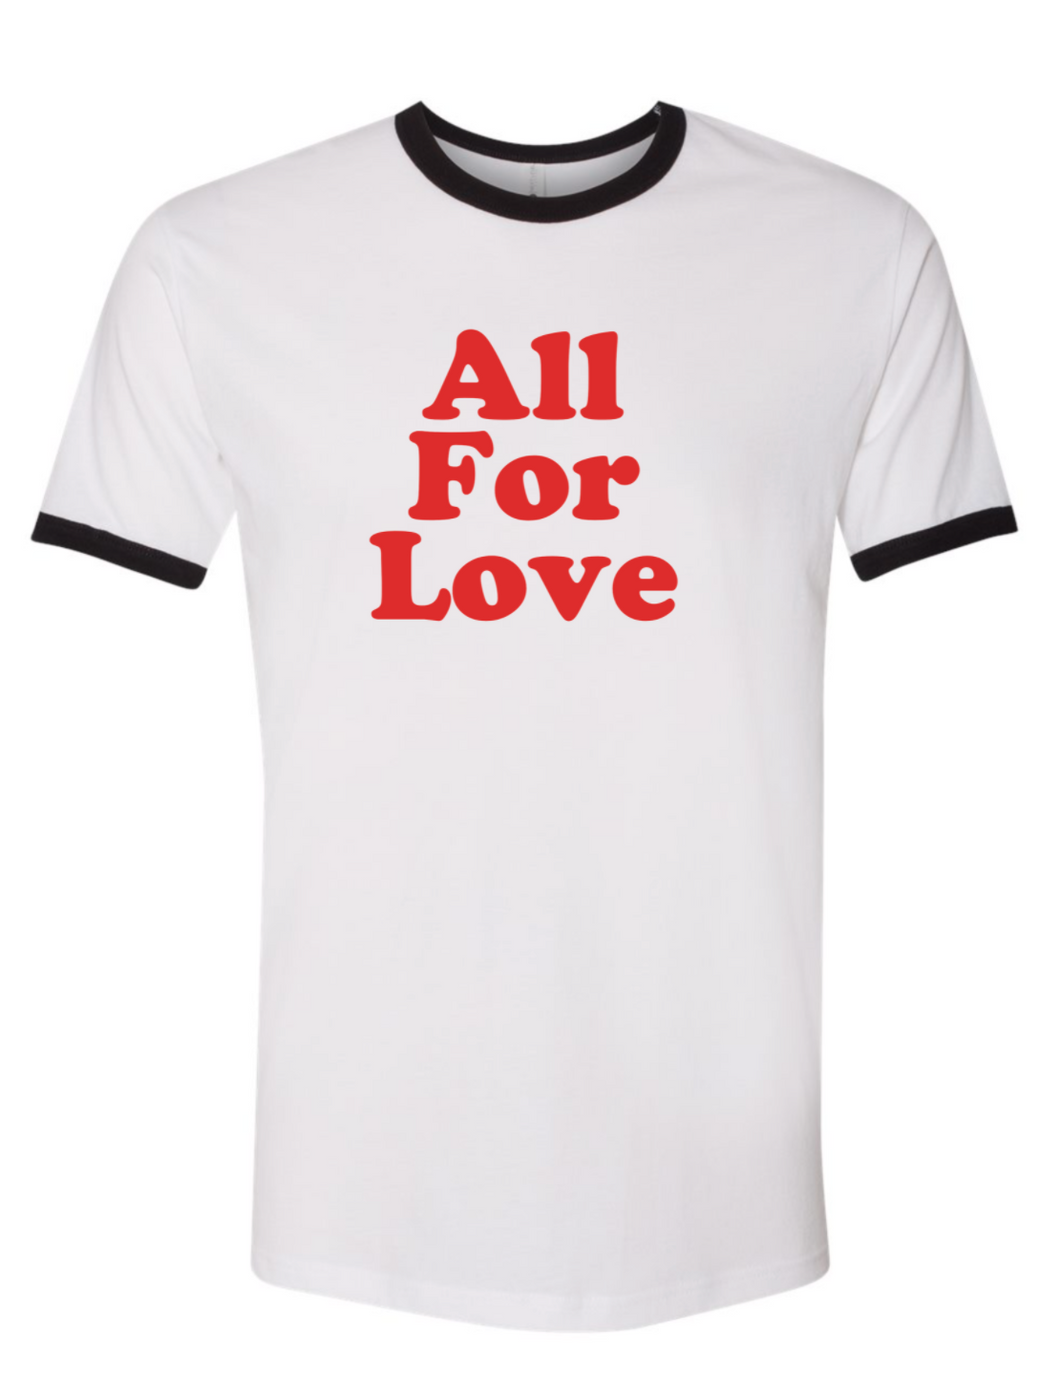 'All For Love' Unisex Ringer Tee